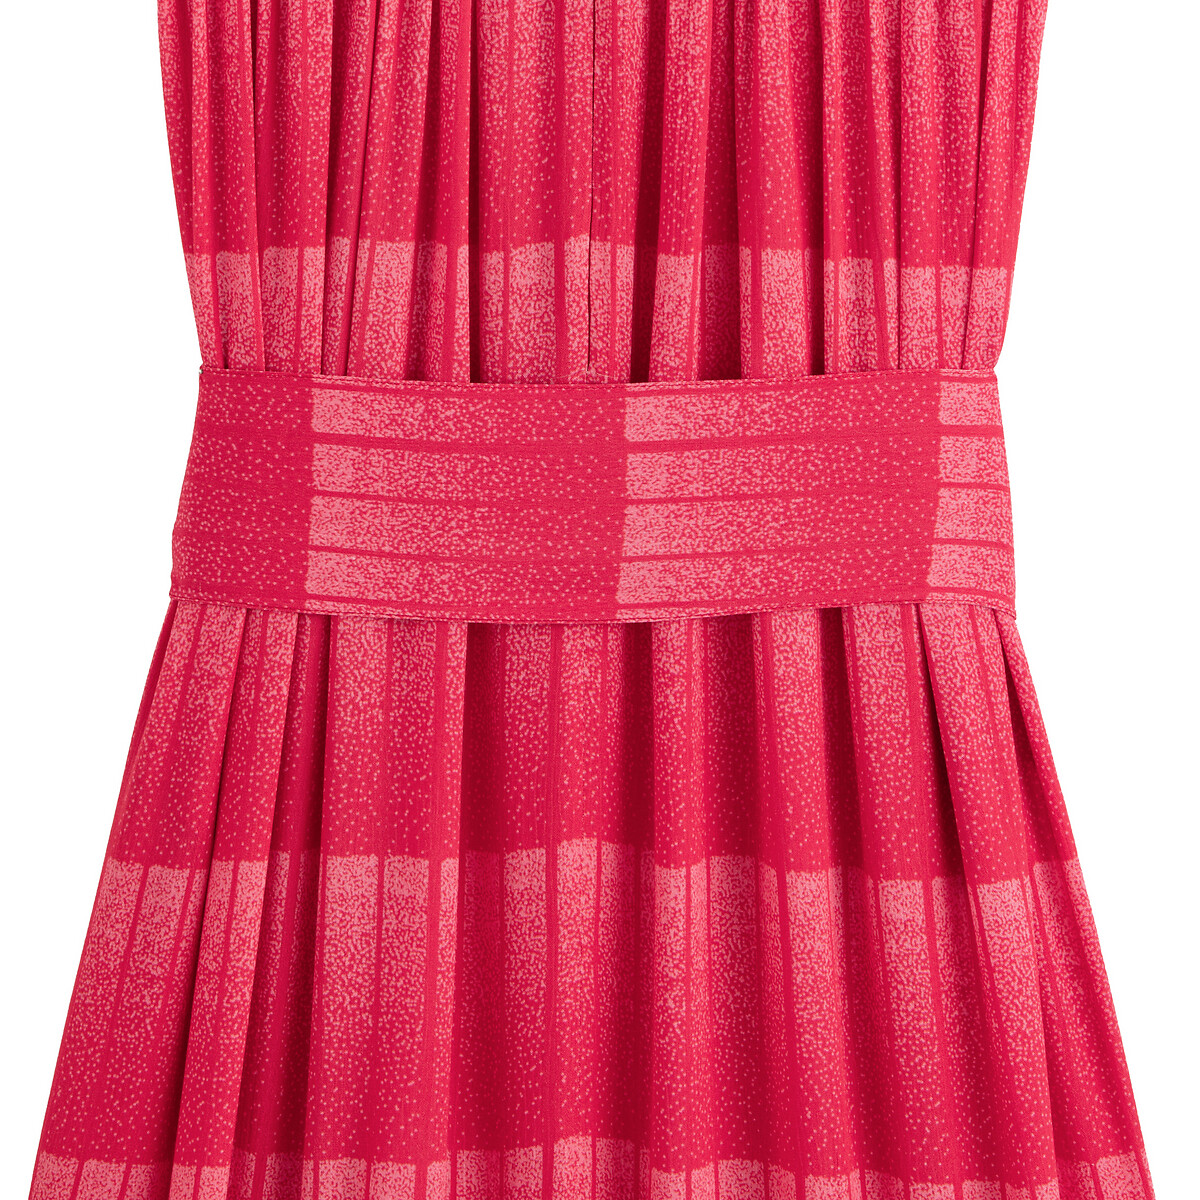 Платье LaRedoute Длинное без рукавов 40 (FR) - 46 (RUS) красный, размер 40 (FR) - 46 (RUS) Длинное без рукавов 40 (FR) - 46 (RUS) красный - фото 4